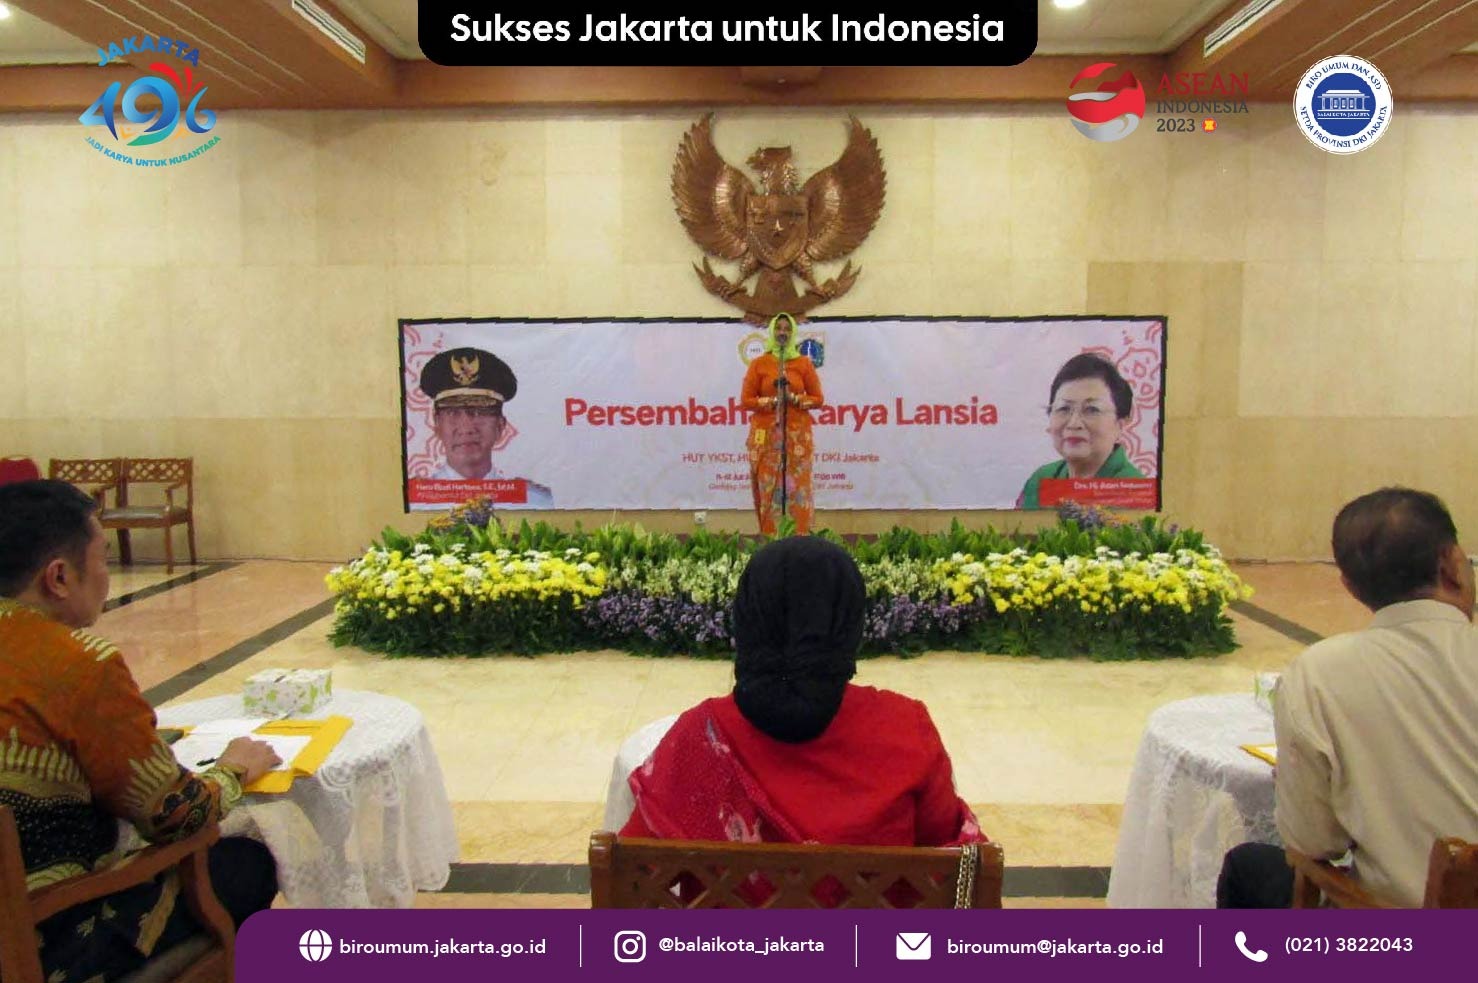 Persembahan Karya Lansia di Balaikota DKI Jakarta, 11- 12 Juli 2023